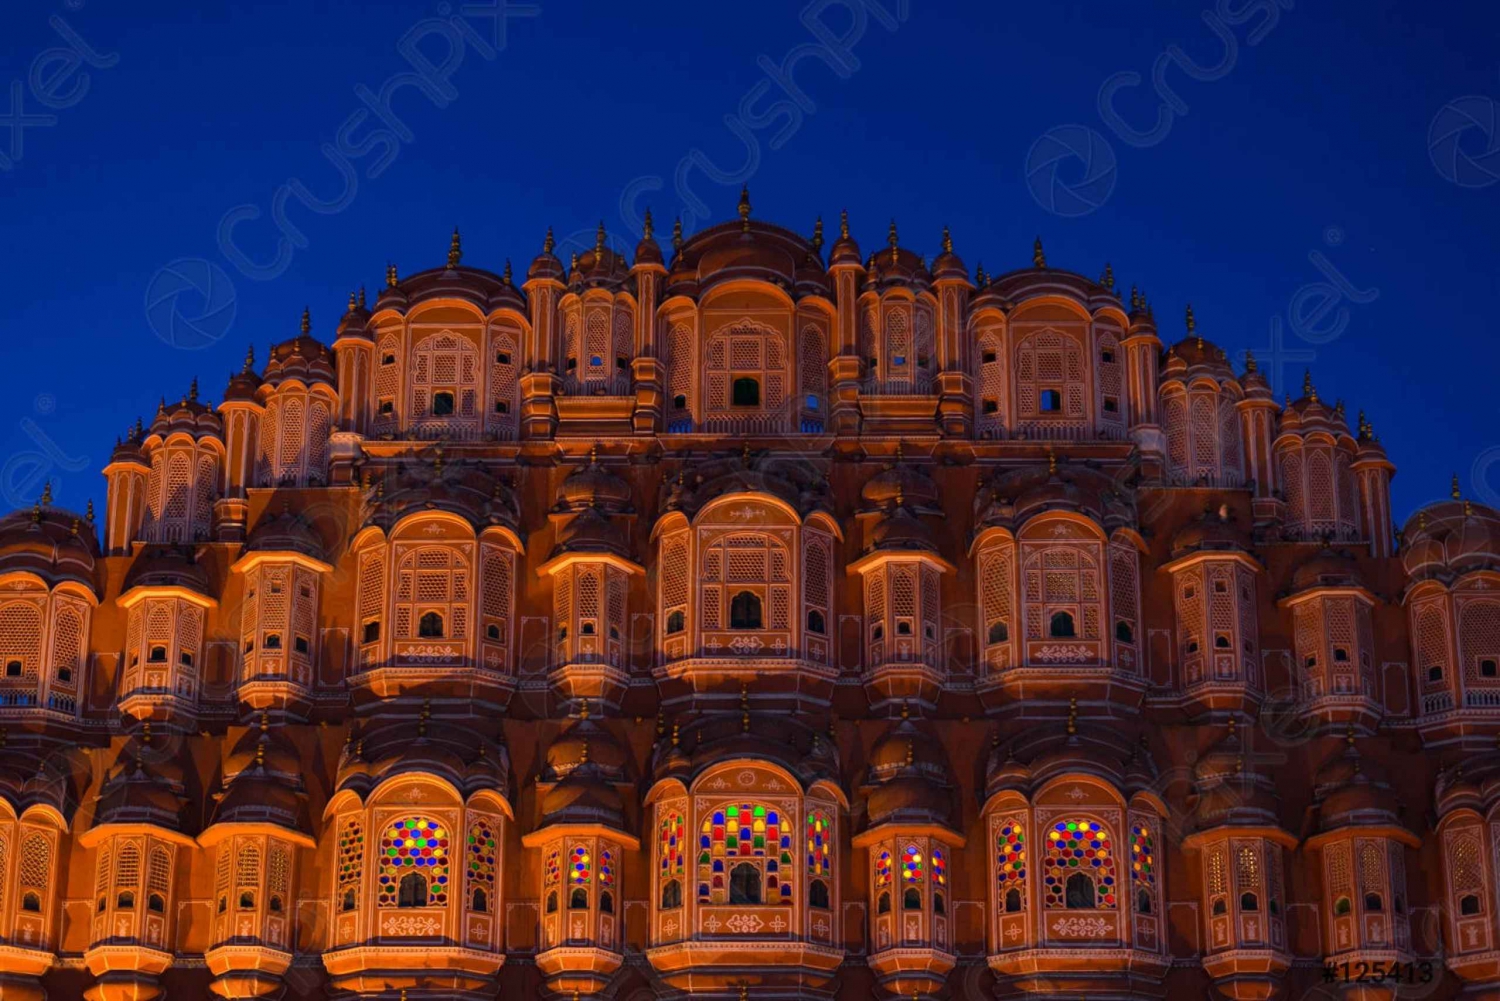 Tour dell'Incredibile India di 3 giorni che include: Delhi, Agra e Jaipur